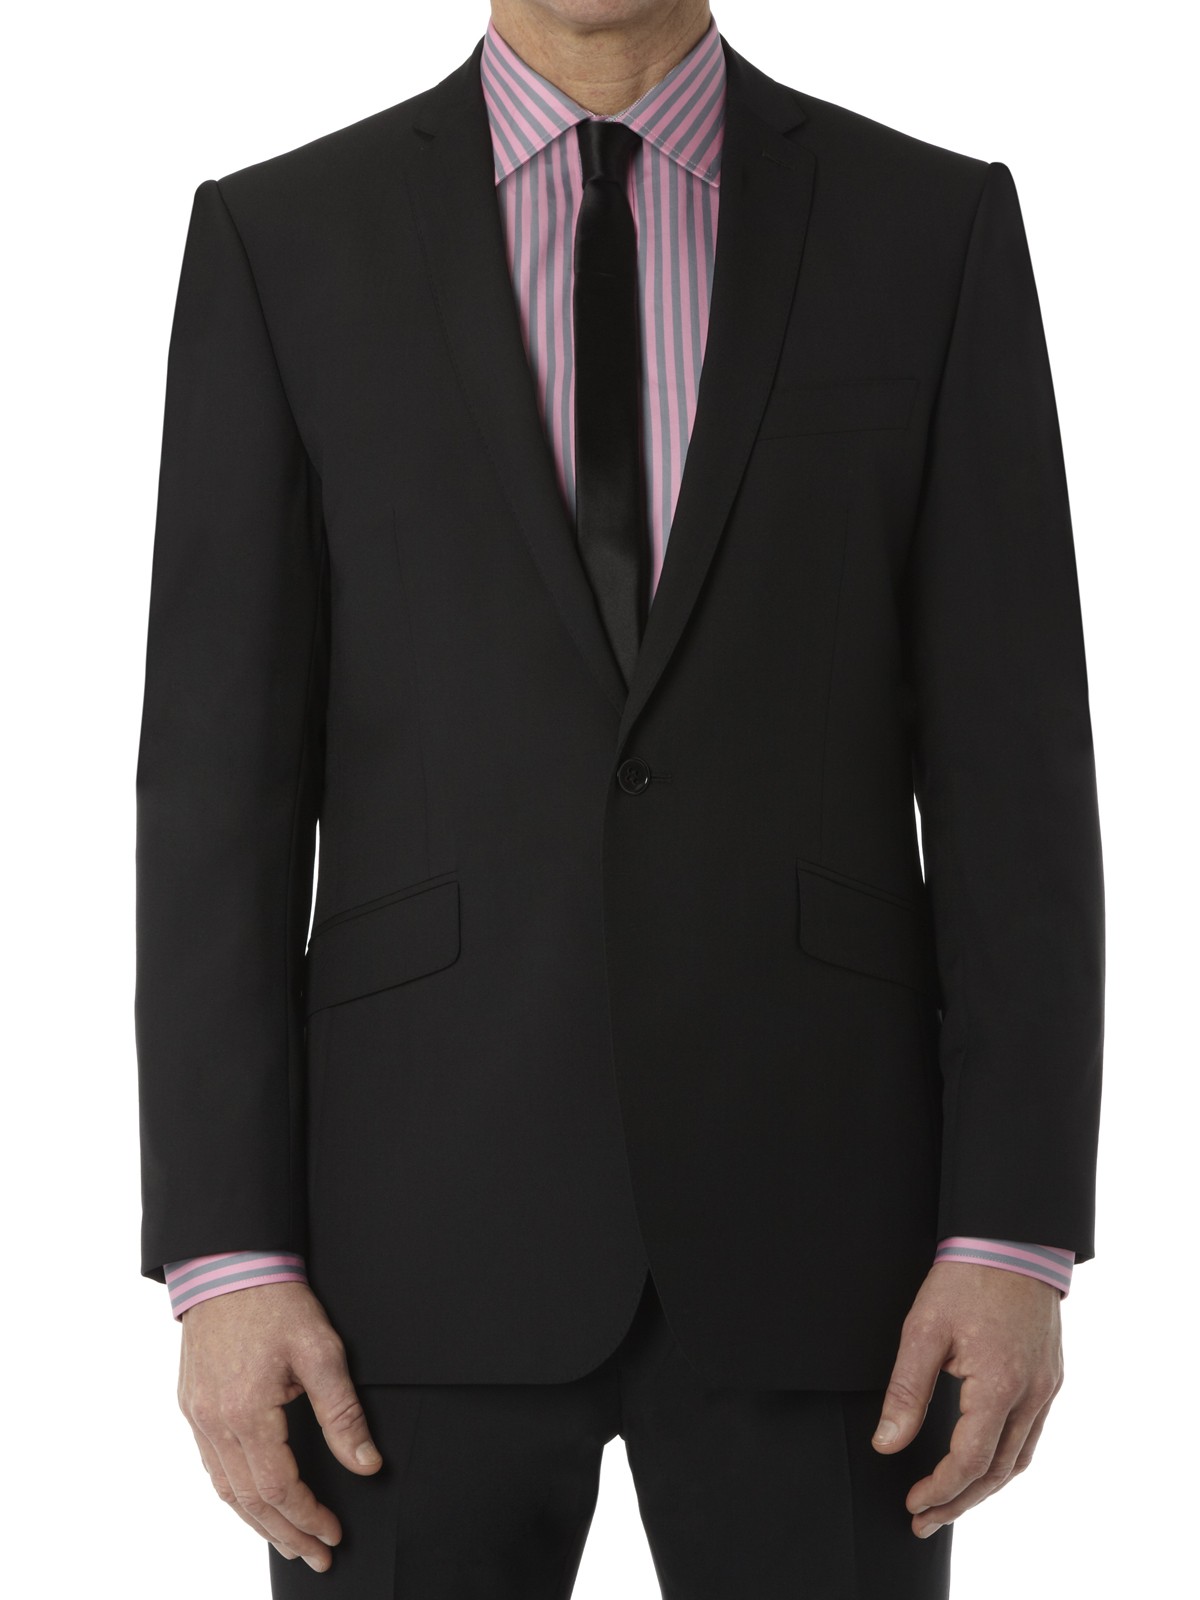 Notch Lapel Black Suit Jacket - Fashion Groom